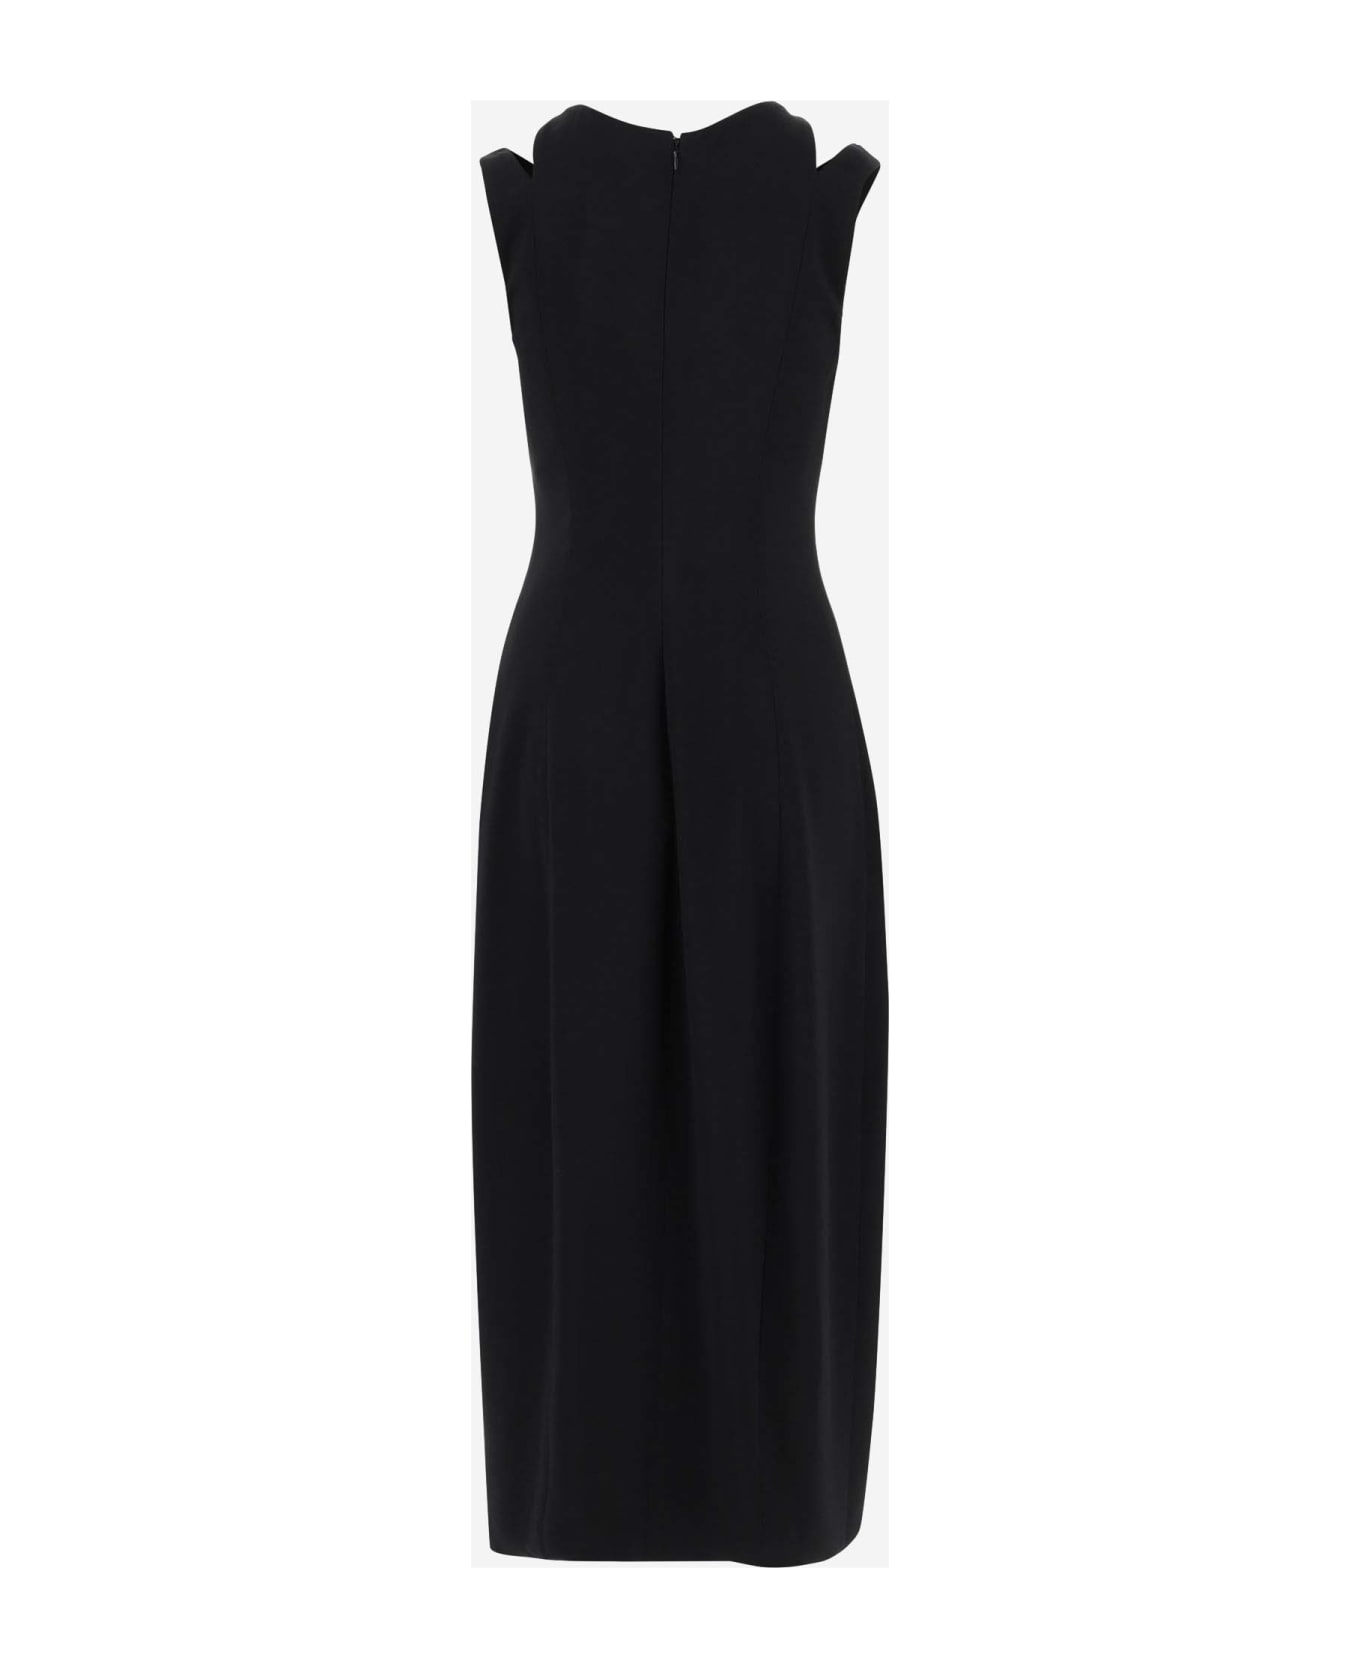 Giorgio Armani Strech Viscose Blend Longuette Dress - Black